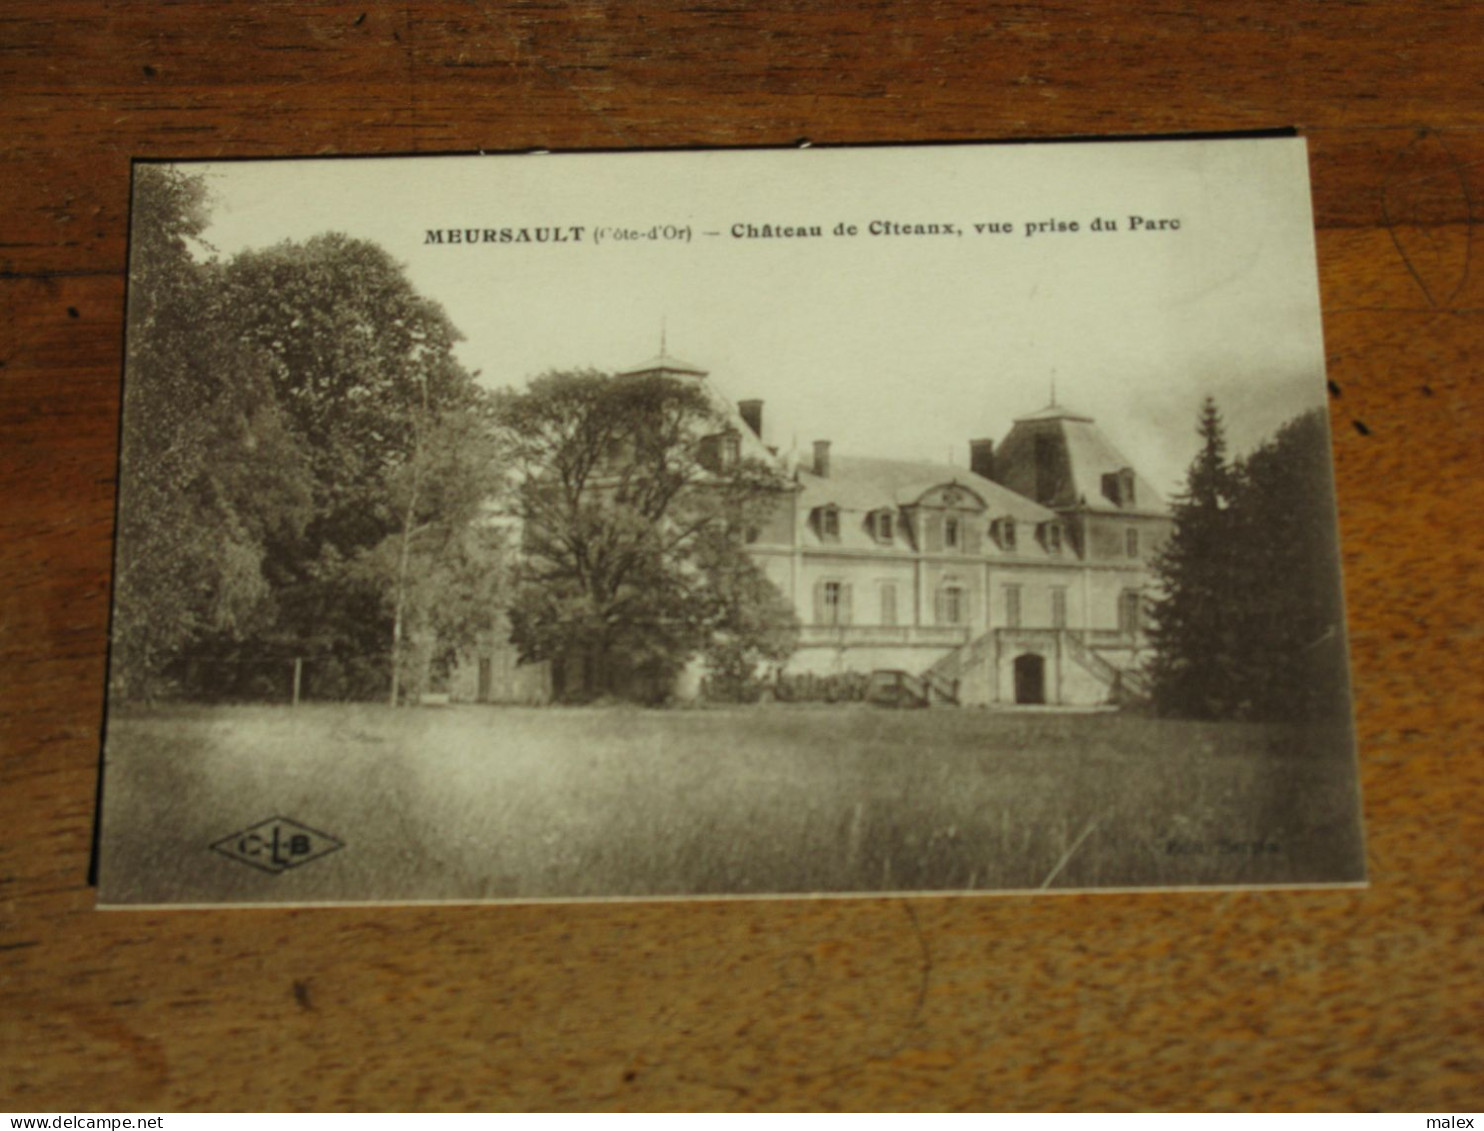 MEURSAULT / Chateau De Citeanx , Vue Prise Du Parc - Meursault